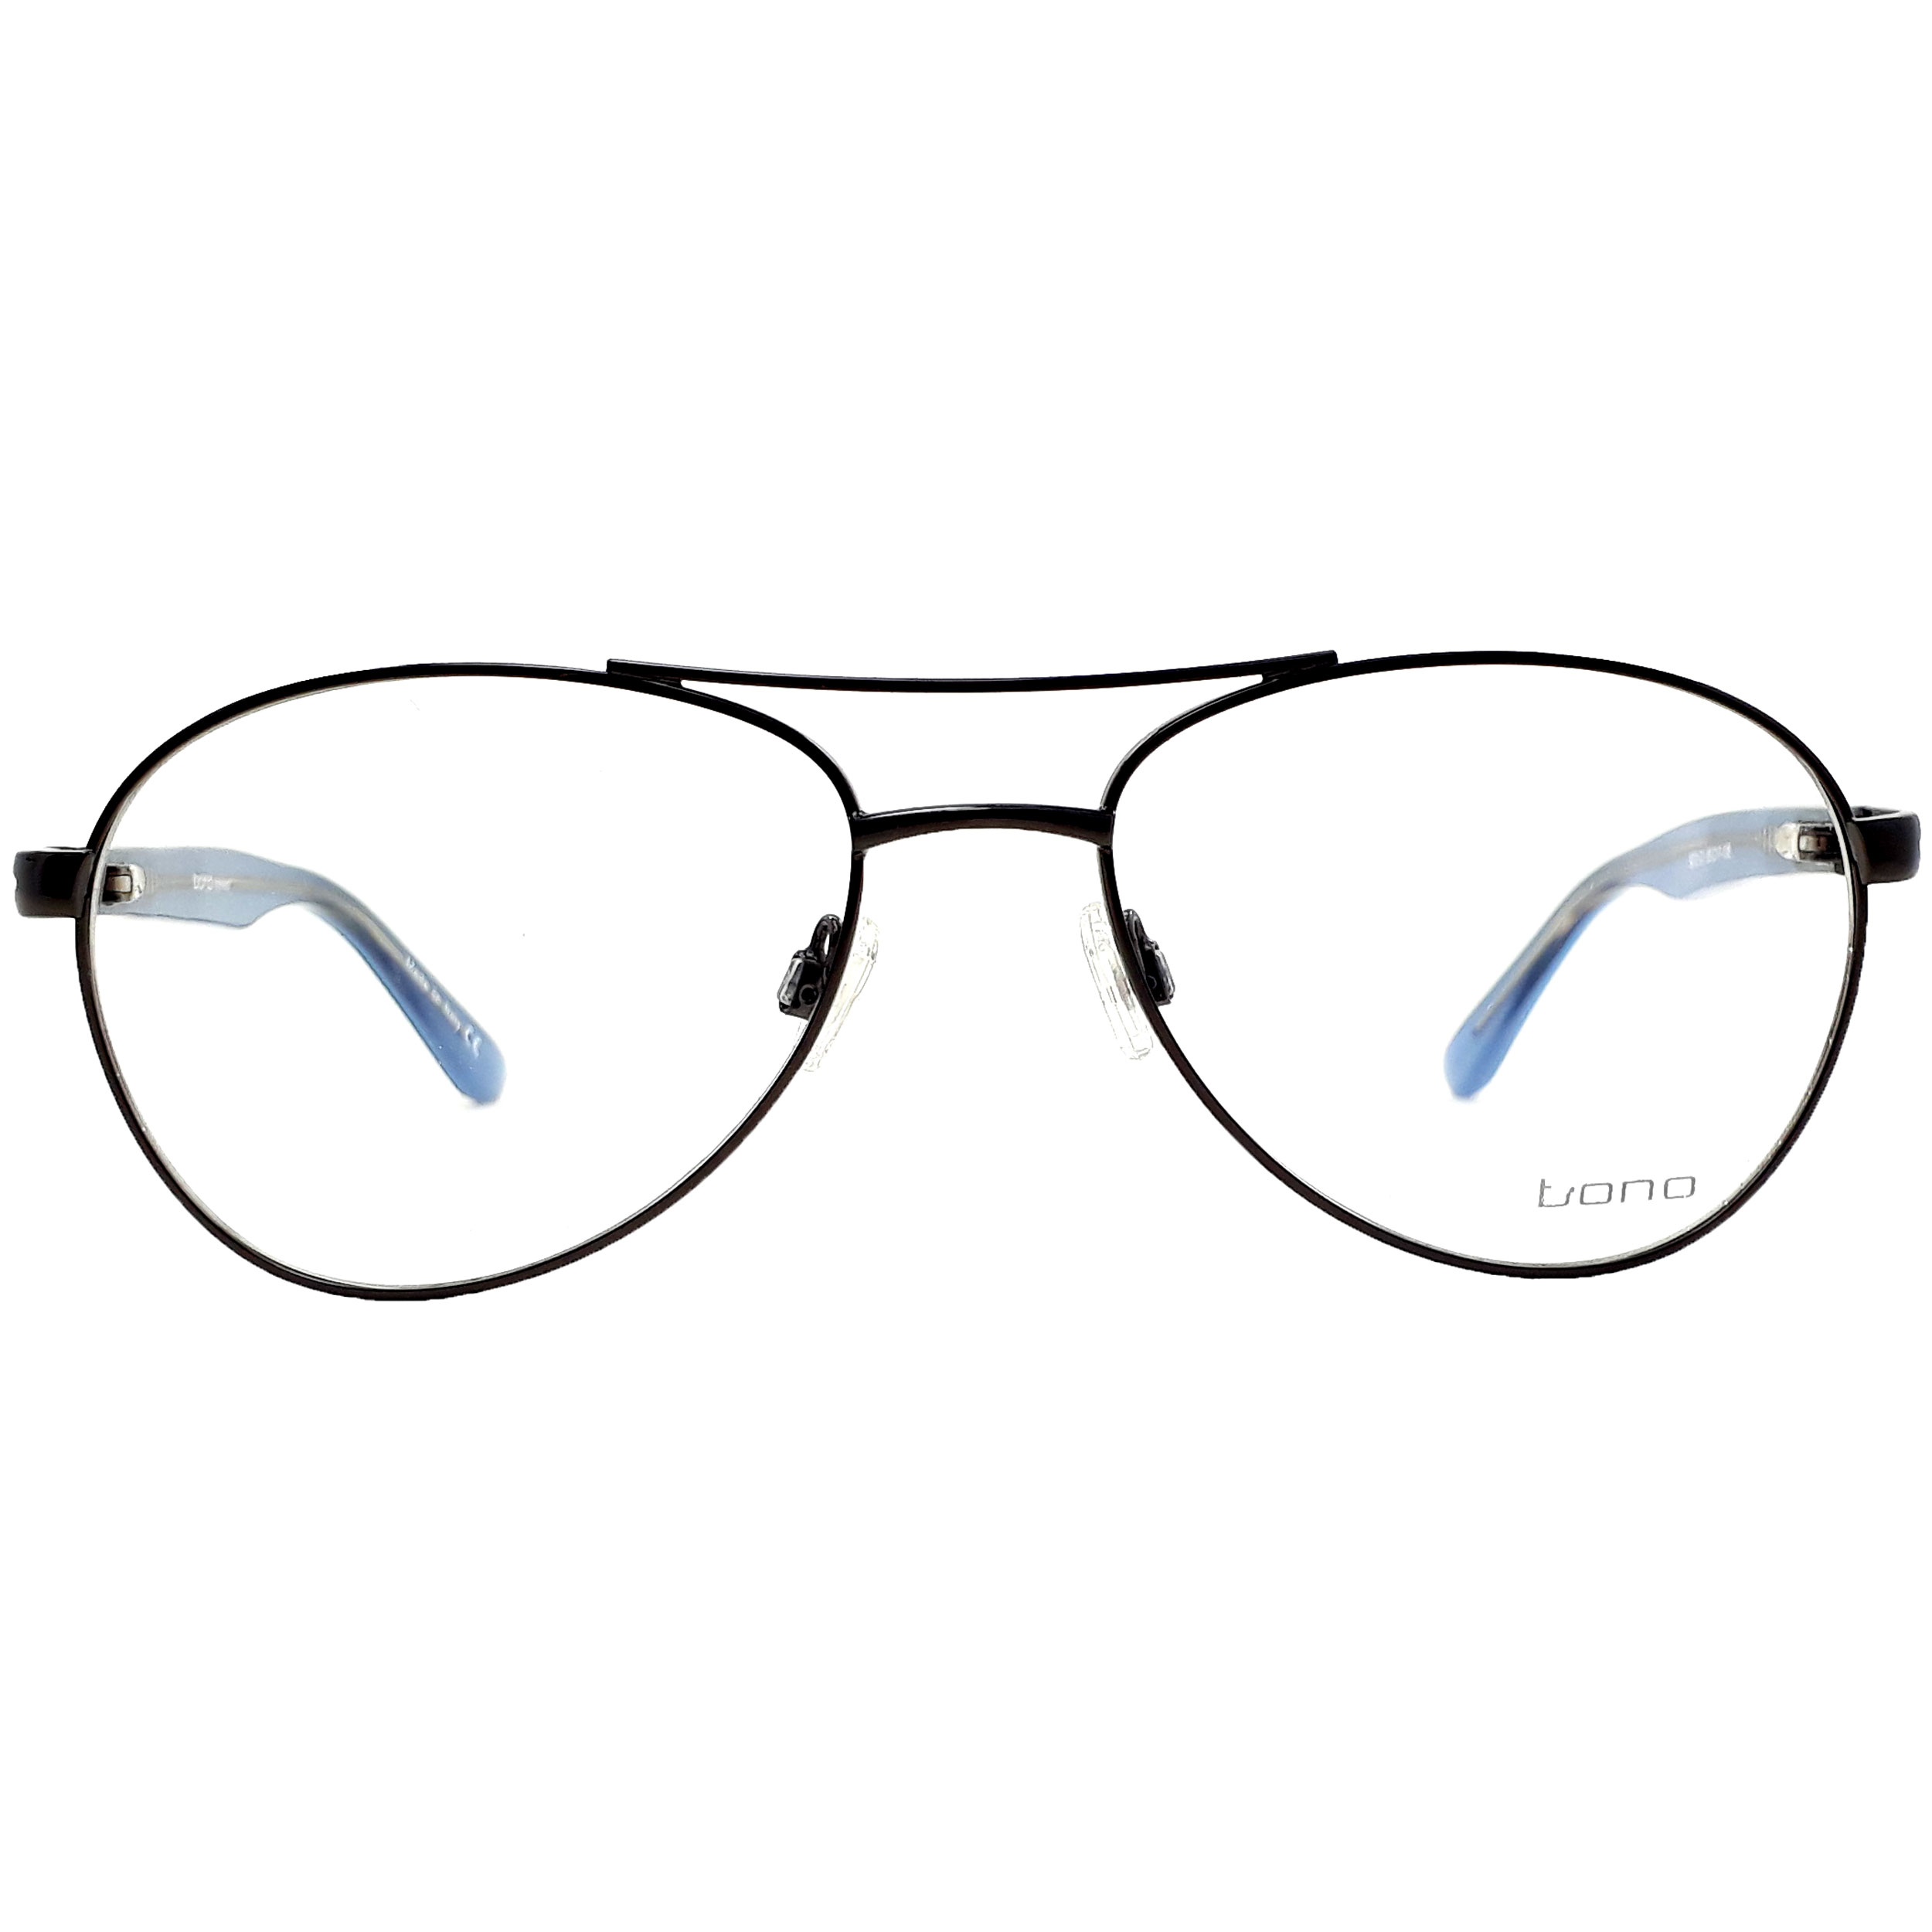 فریم عینک طبی  بونو مدل b273